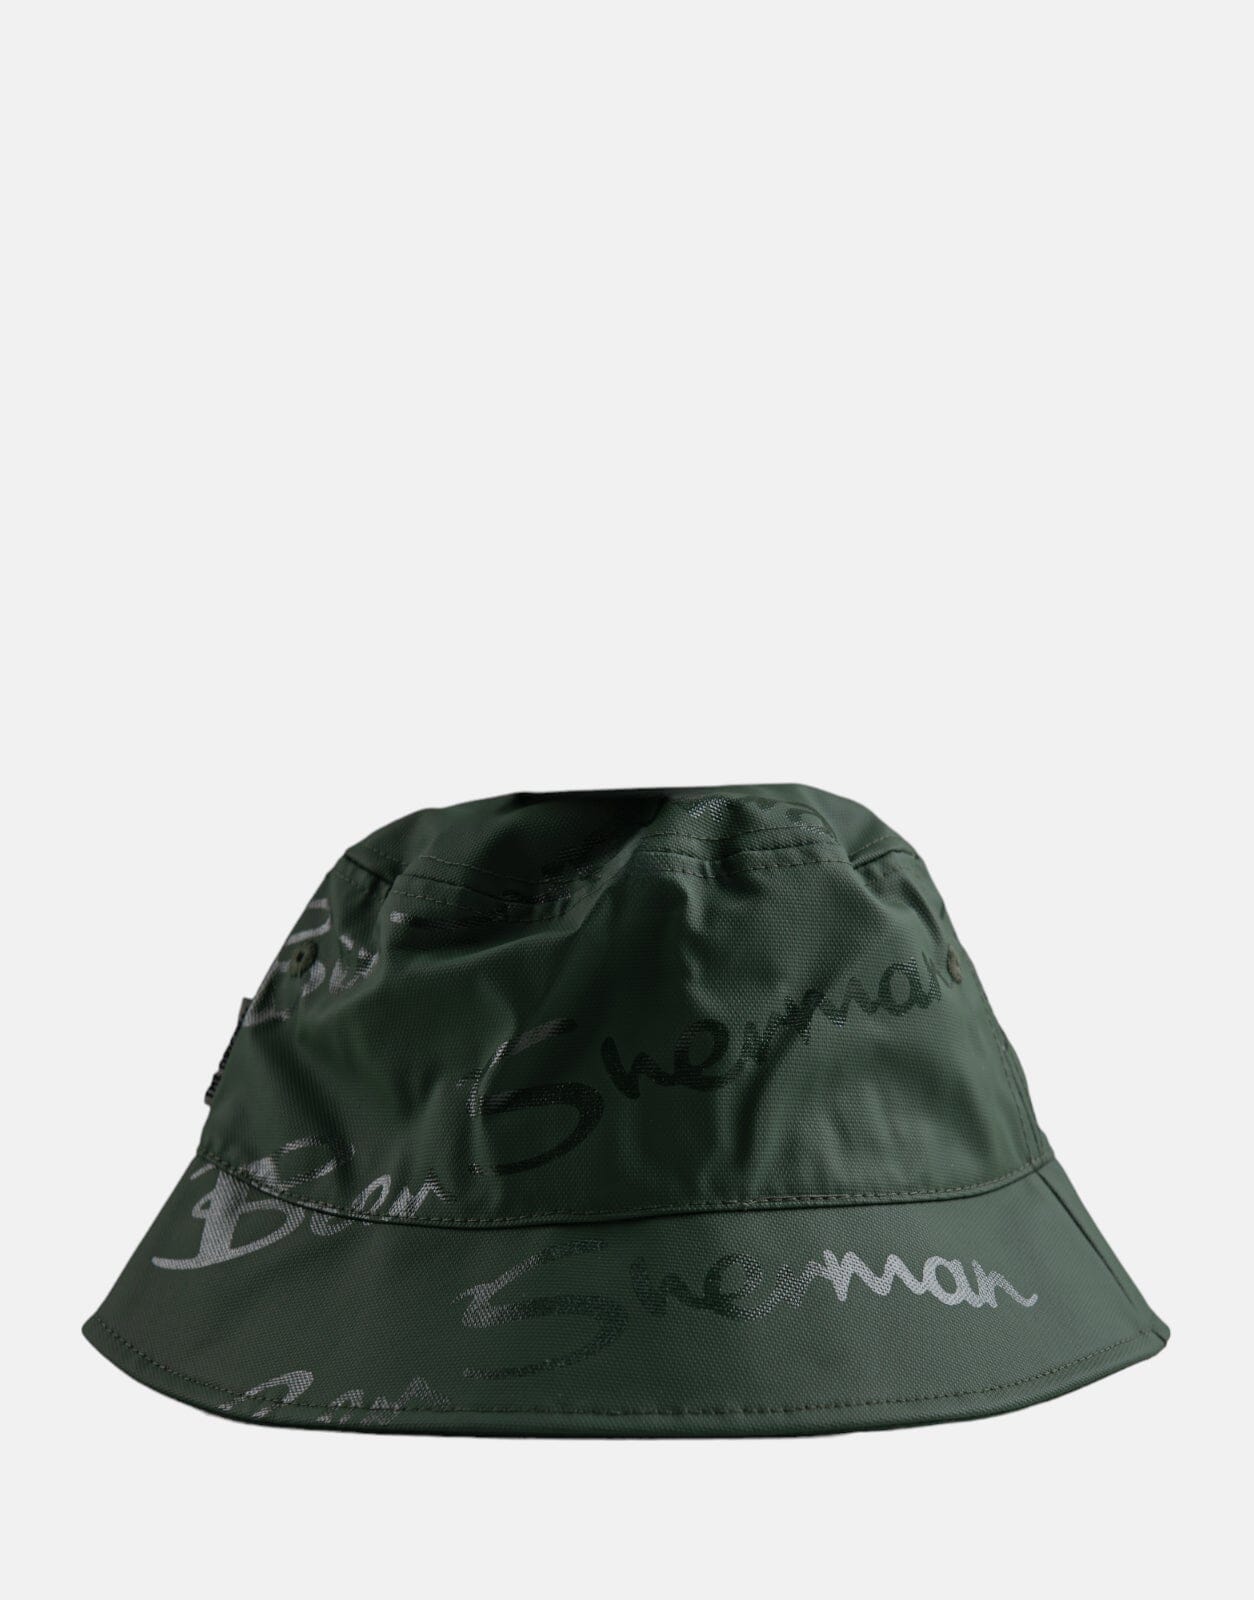 Ben Sherman Wax Target Bucket Hat DKO - Subwear